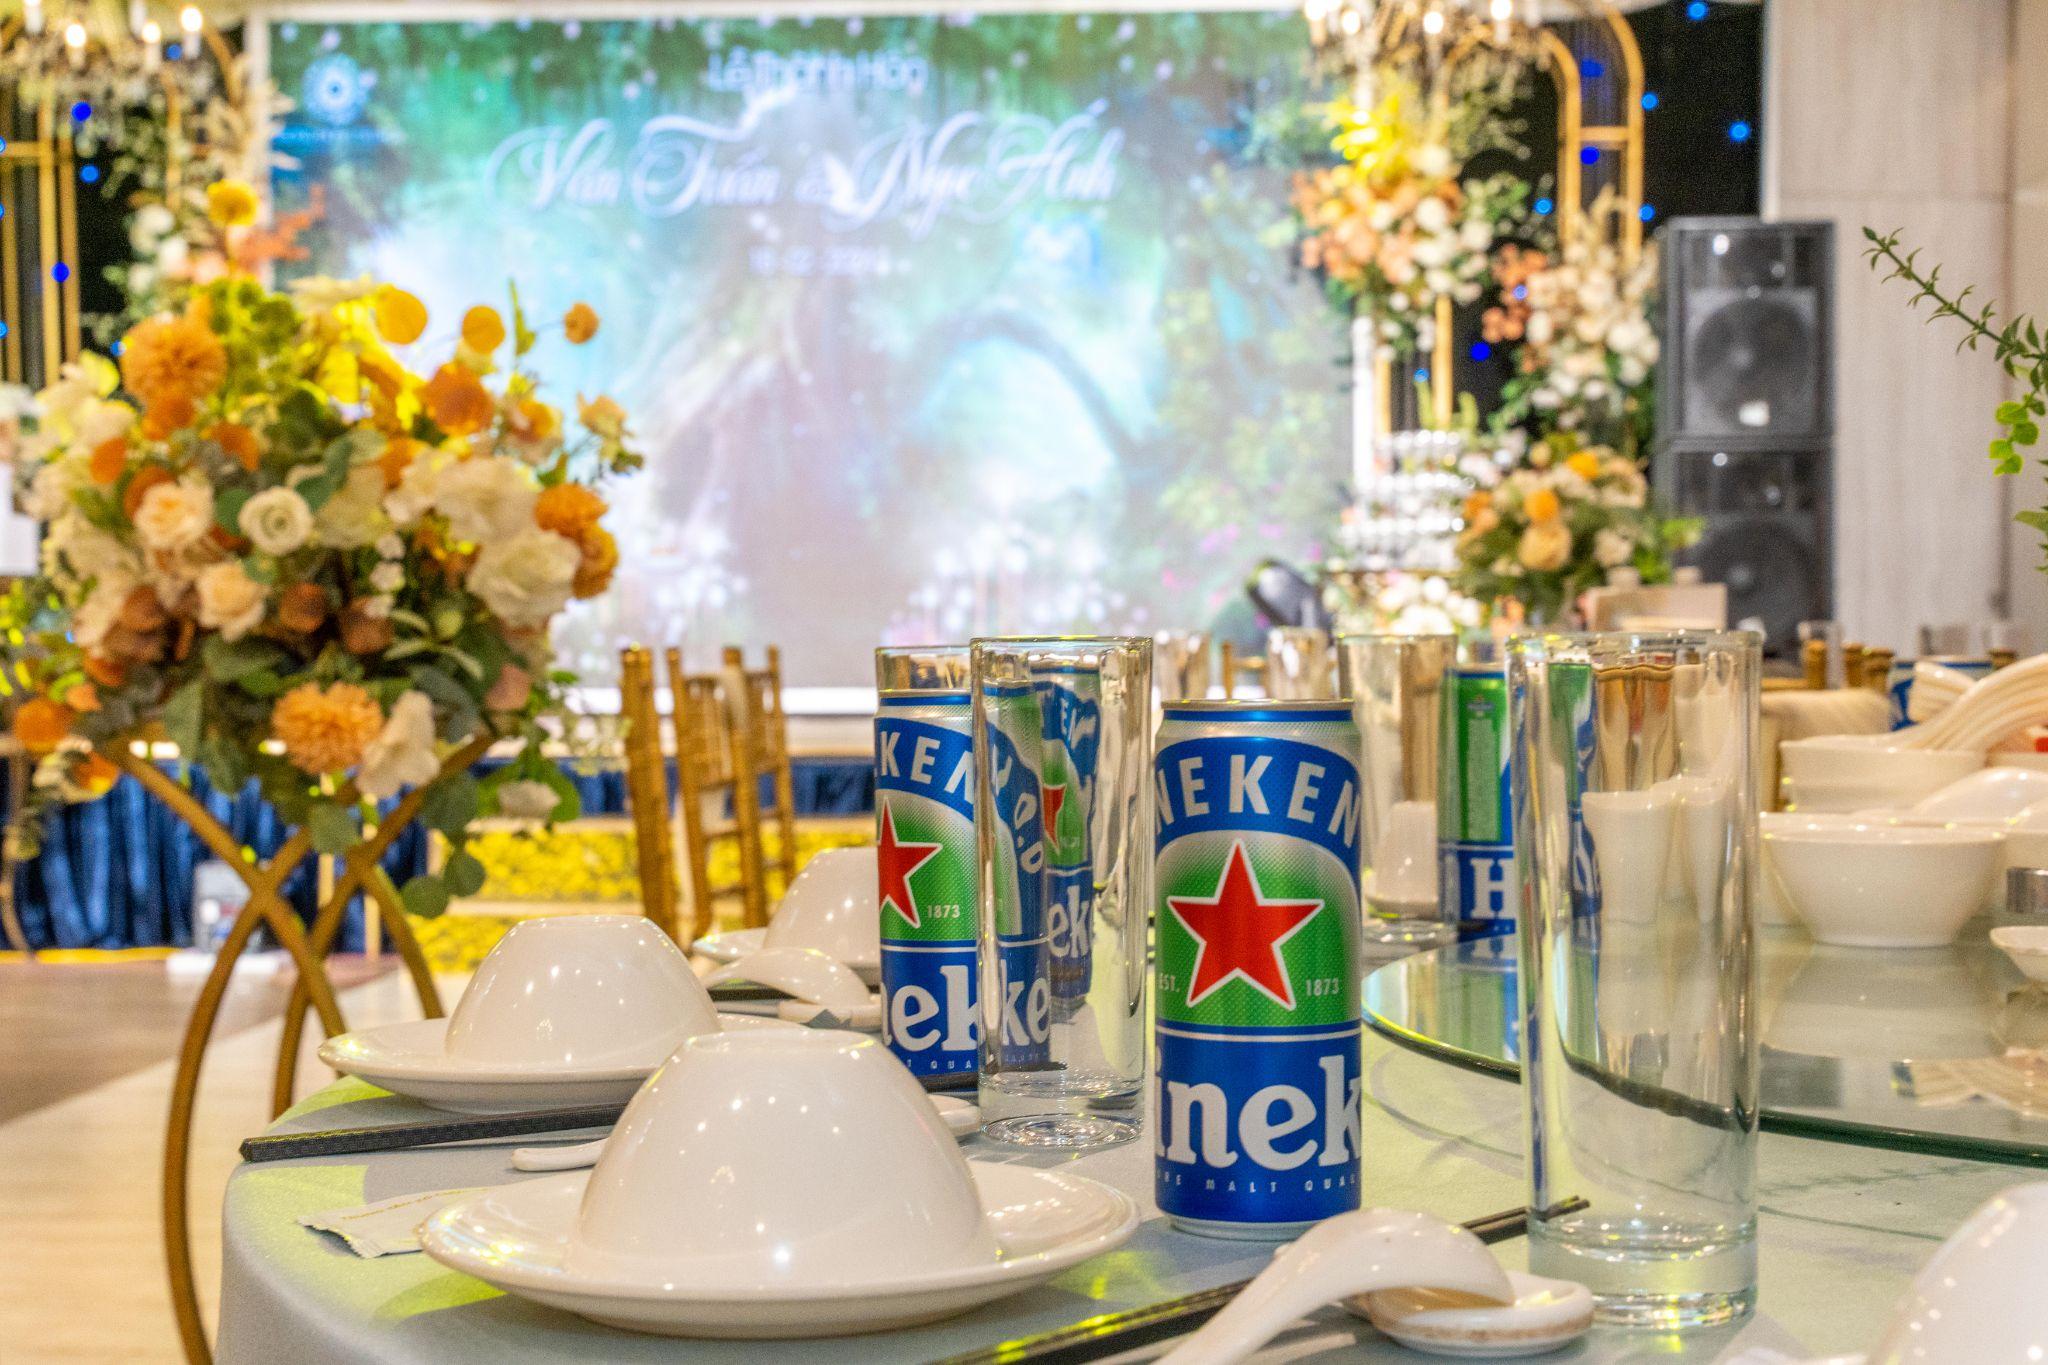 Heineken 0.0 “bắt tay” trung tâm tiệc cưới Trống Đồng Palace dẫn đầu xu hướng “tiệc không cồn” - 1